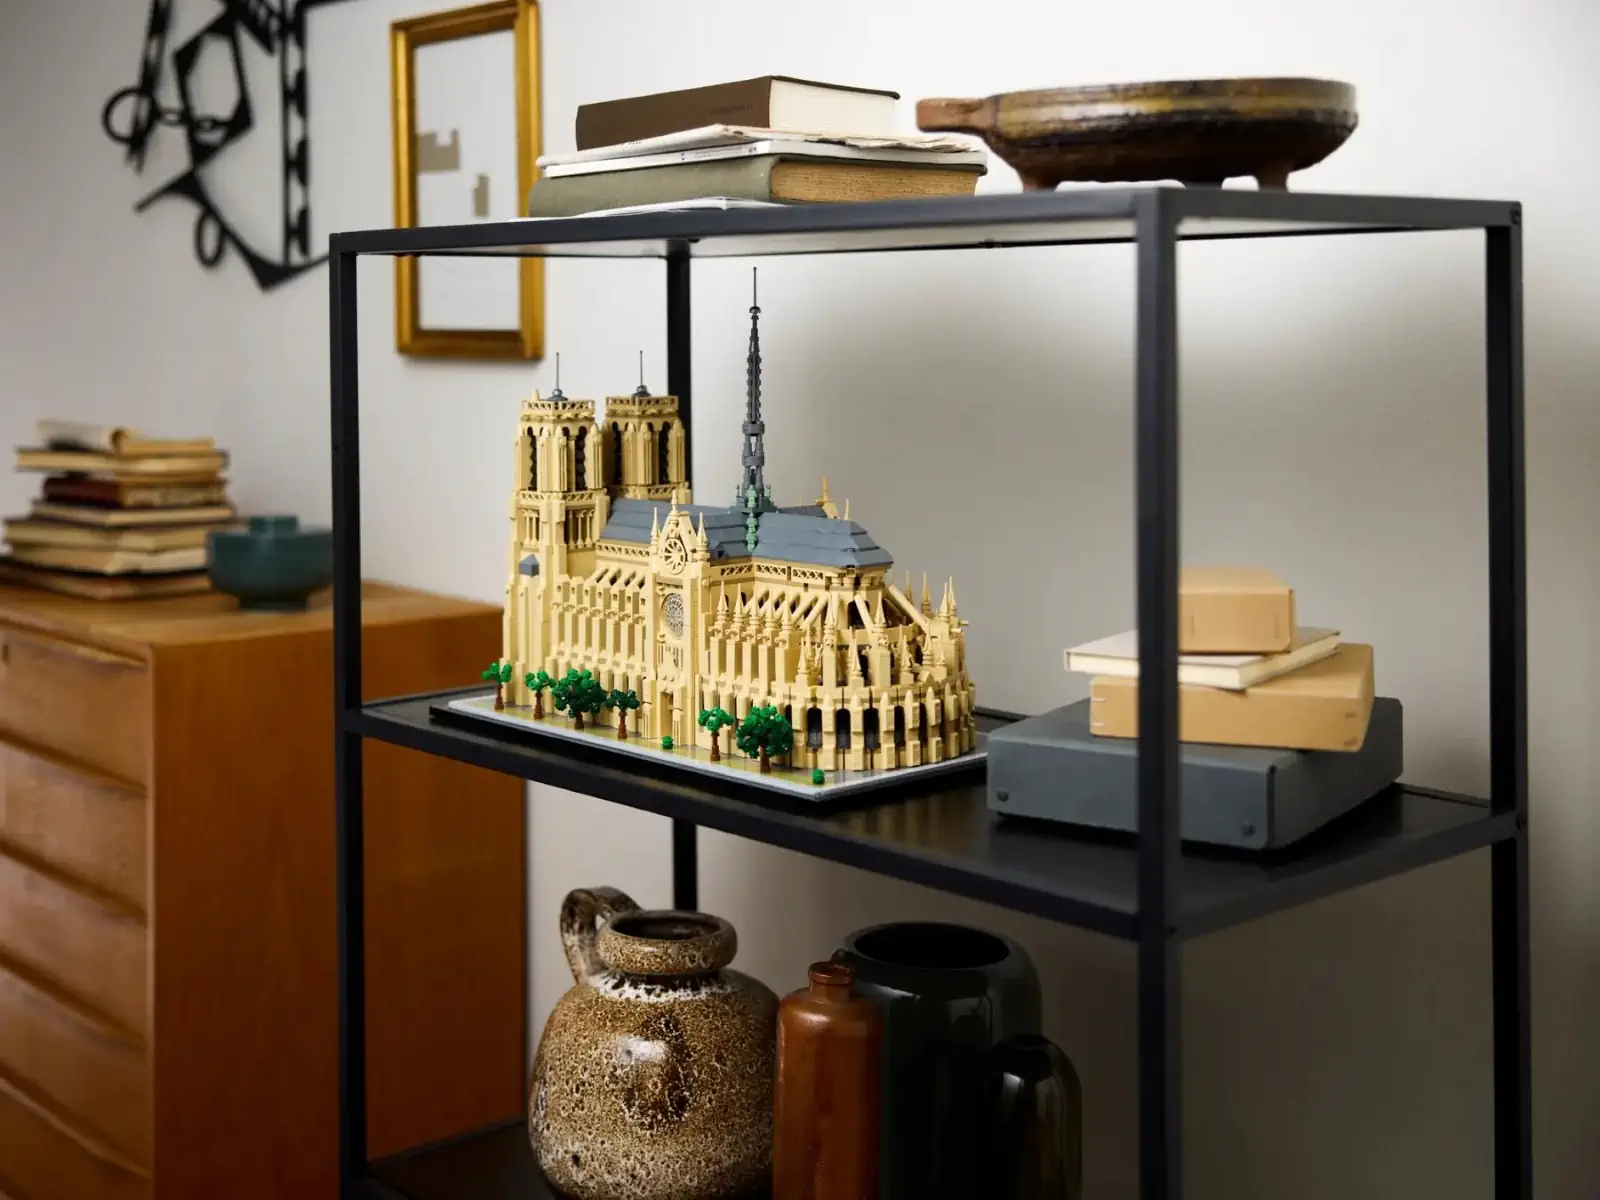 LEGO recrée Notre-Dame de Paris dans un superbe ensemble de 4 383 pièces